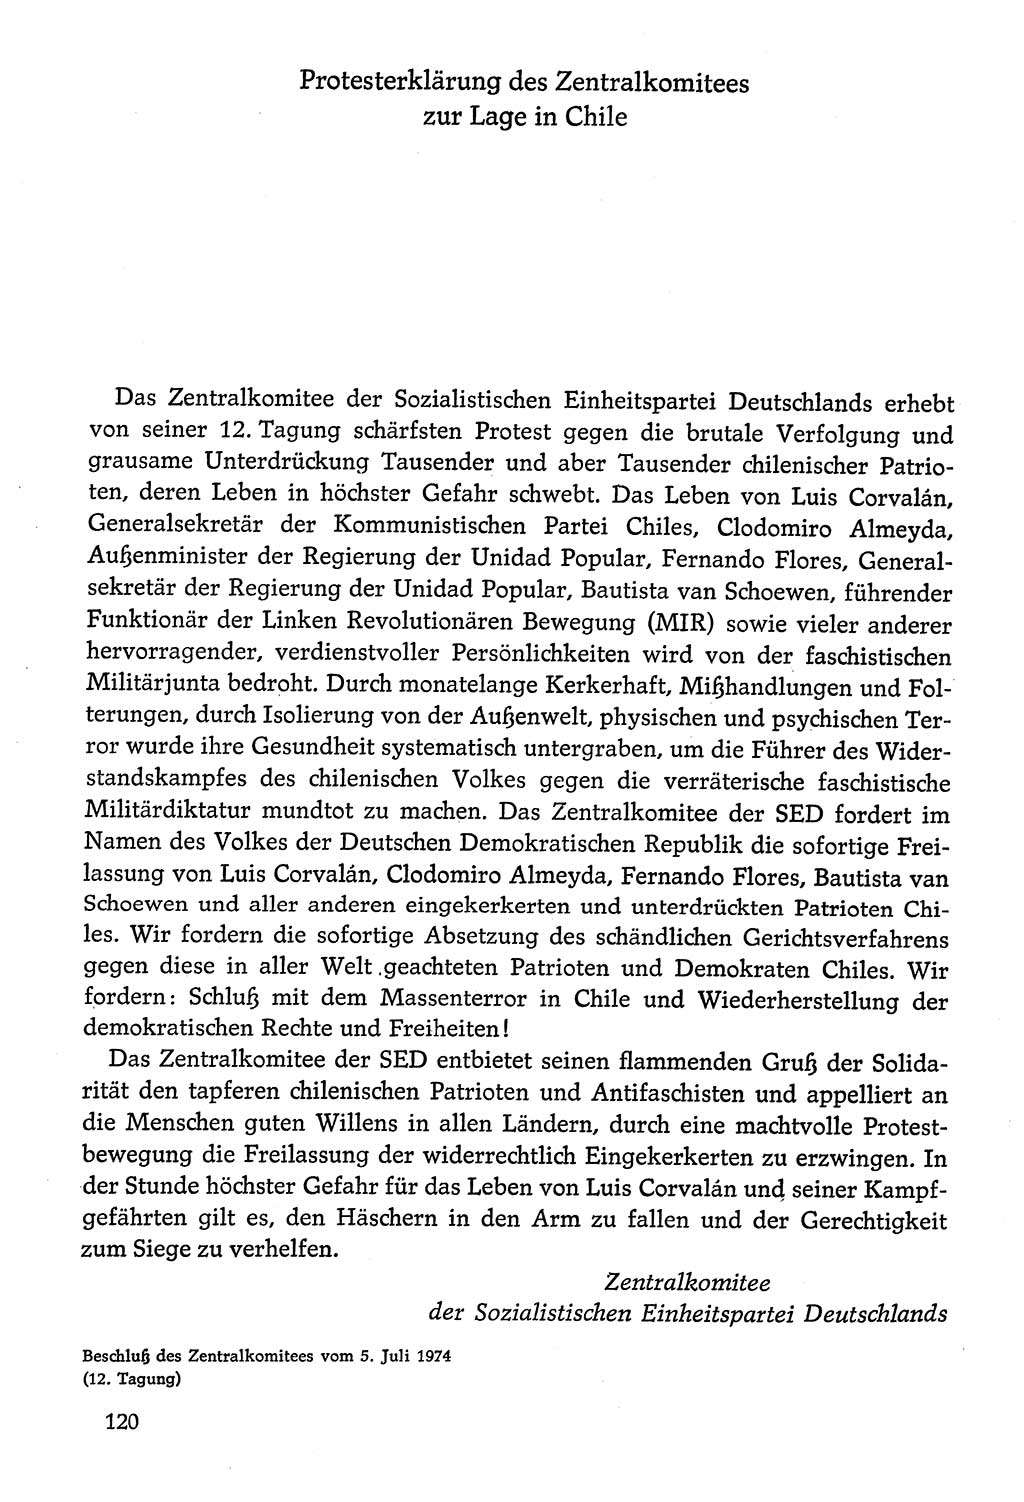 Dokumente der Sozialistischen Einheitspartei Deutschlands (SED) [Deutsche Demokratische Republik (DDR)] 1974-1975, Seite 120 (Dok. SED DDR 1978, Bd. ⅩⅤ, S. 120)